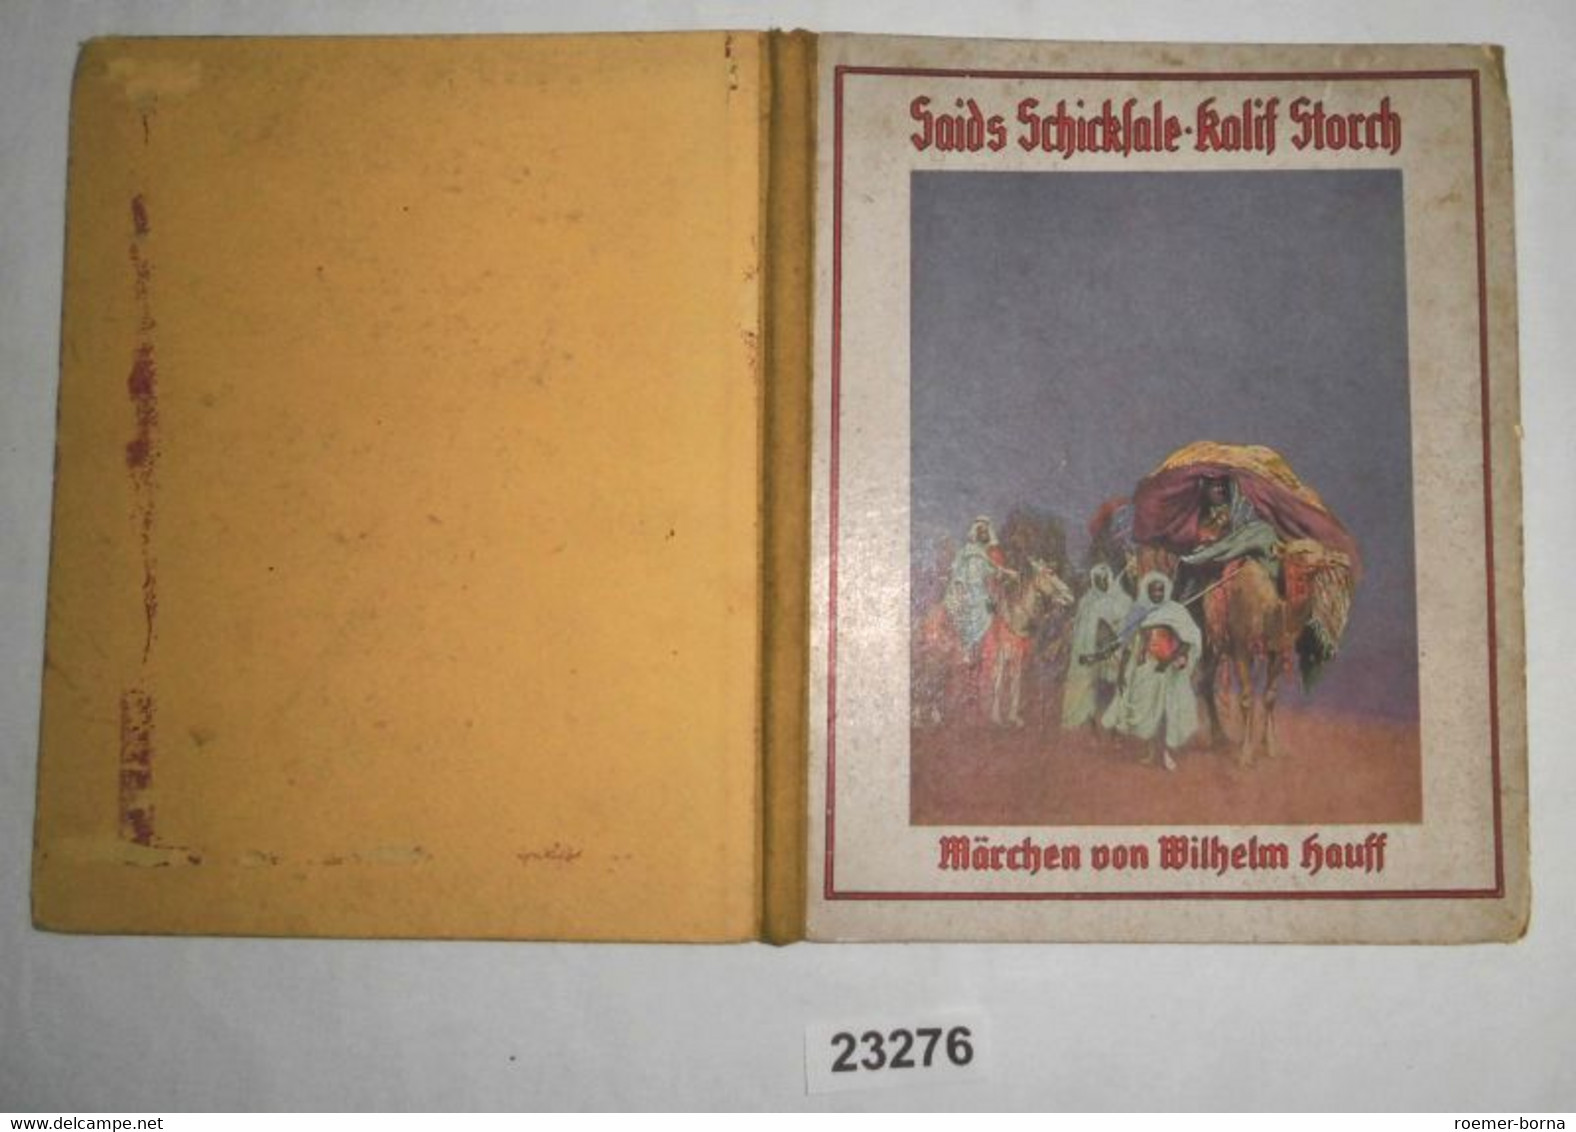 Saids Schicksale - Kalif Storch (Märchen) - Contes